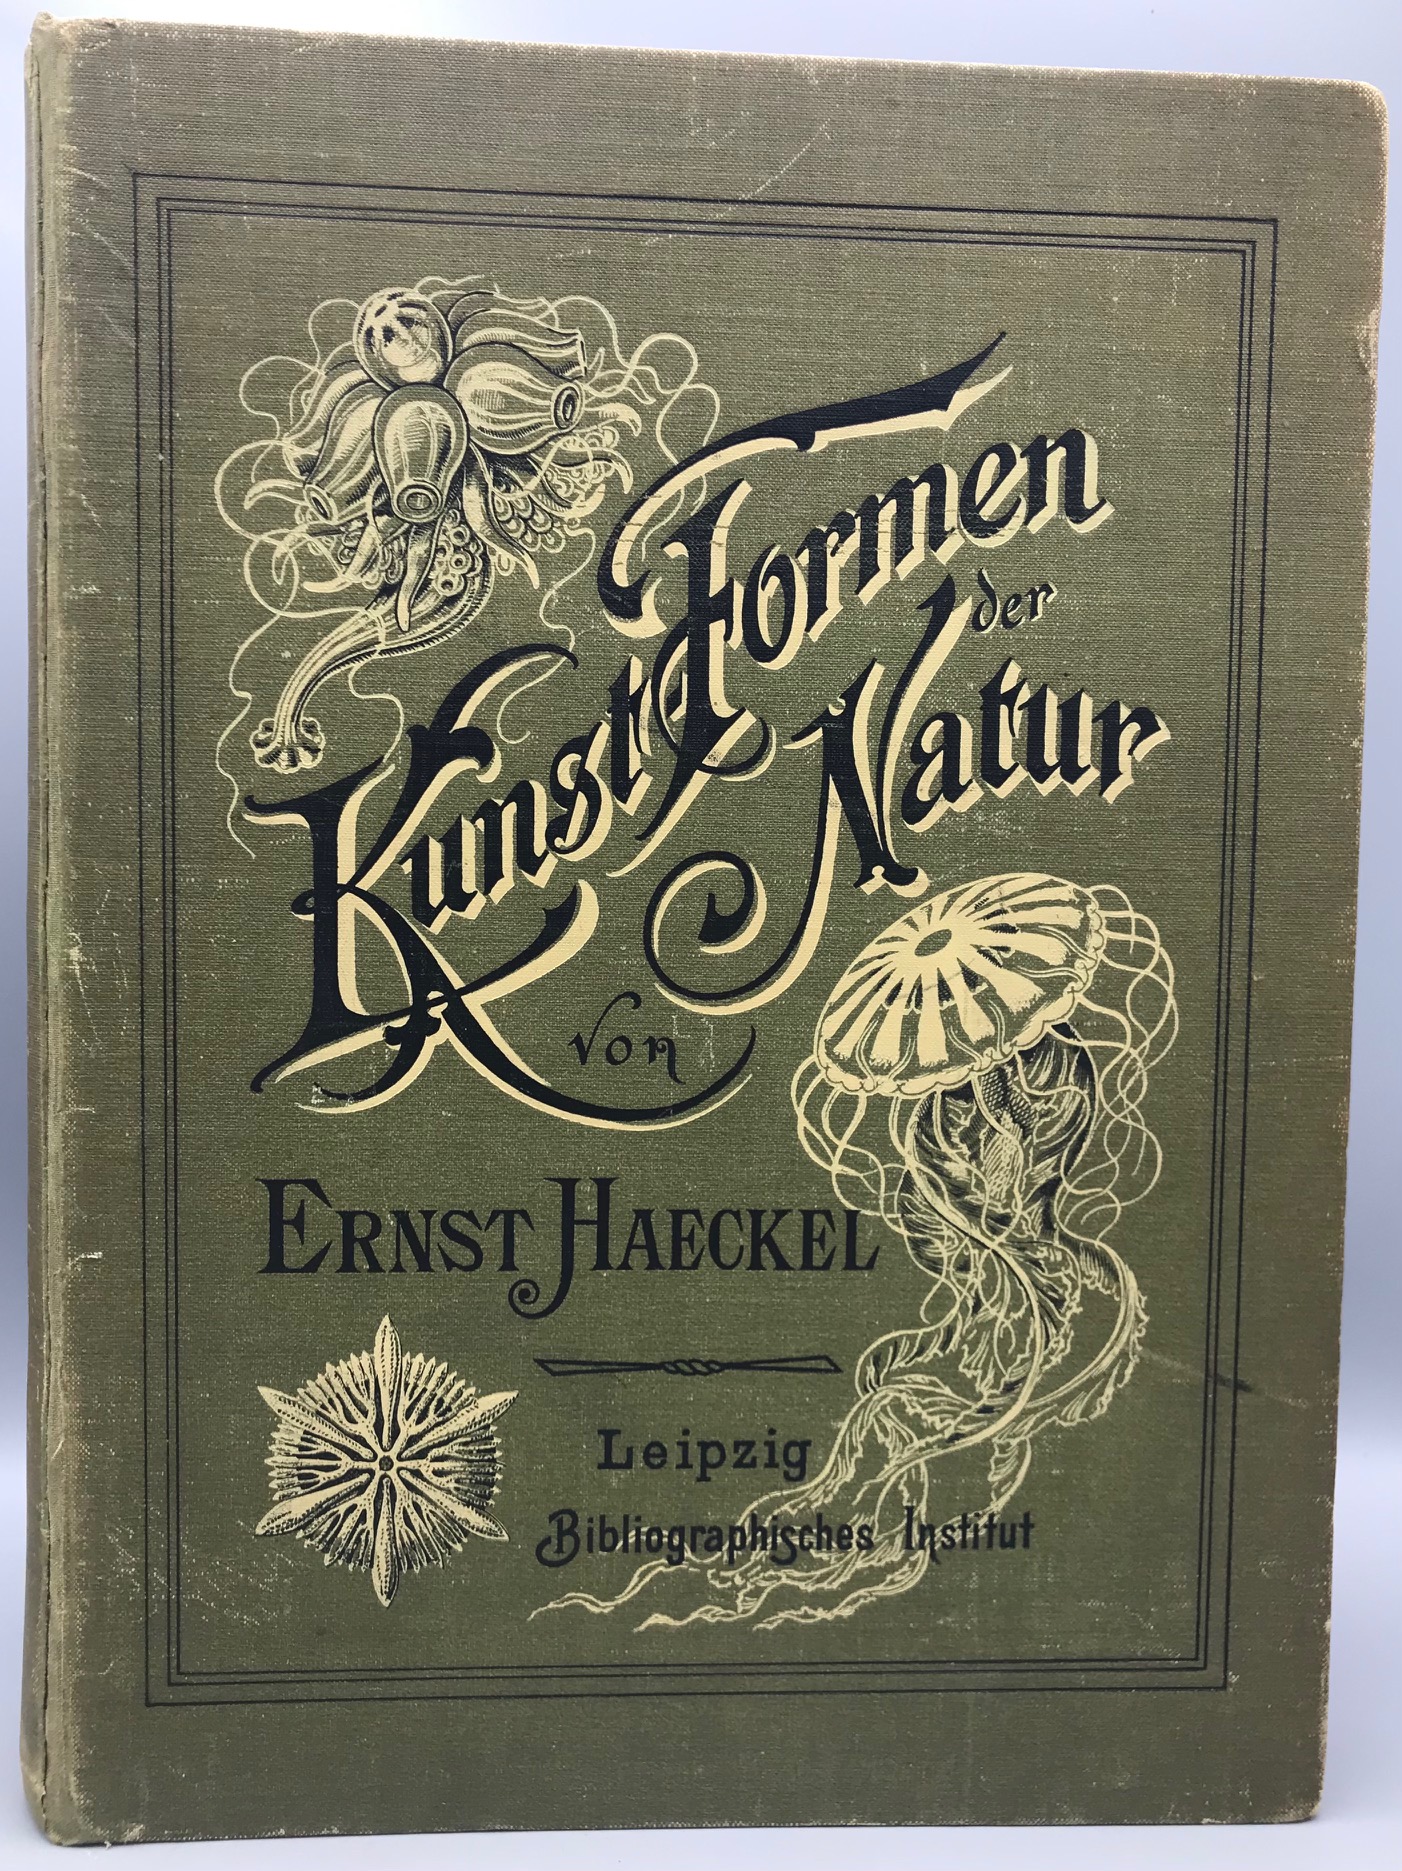 KUNSTFORMEN DER NATUR (ART FORMS IN NATURE), by Ernst Haeckel - 1904 [100 Plates]